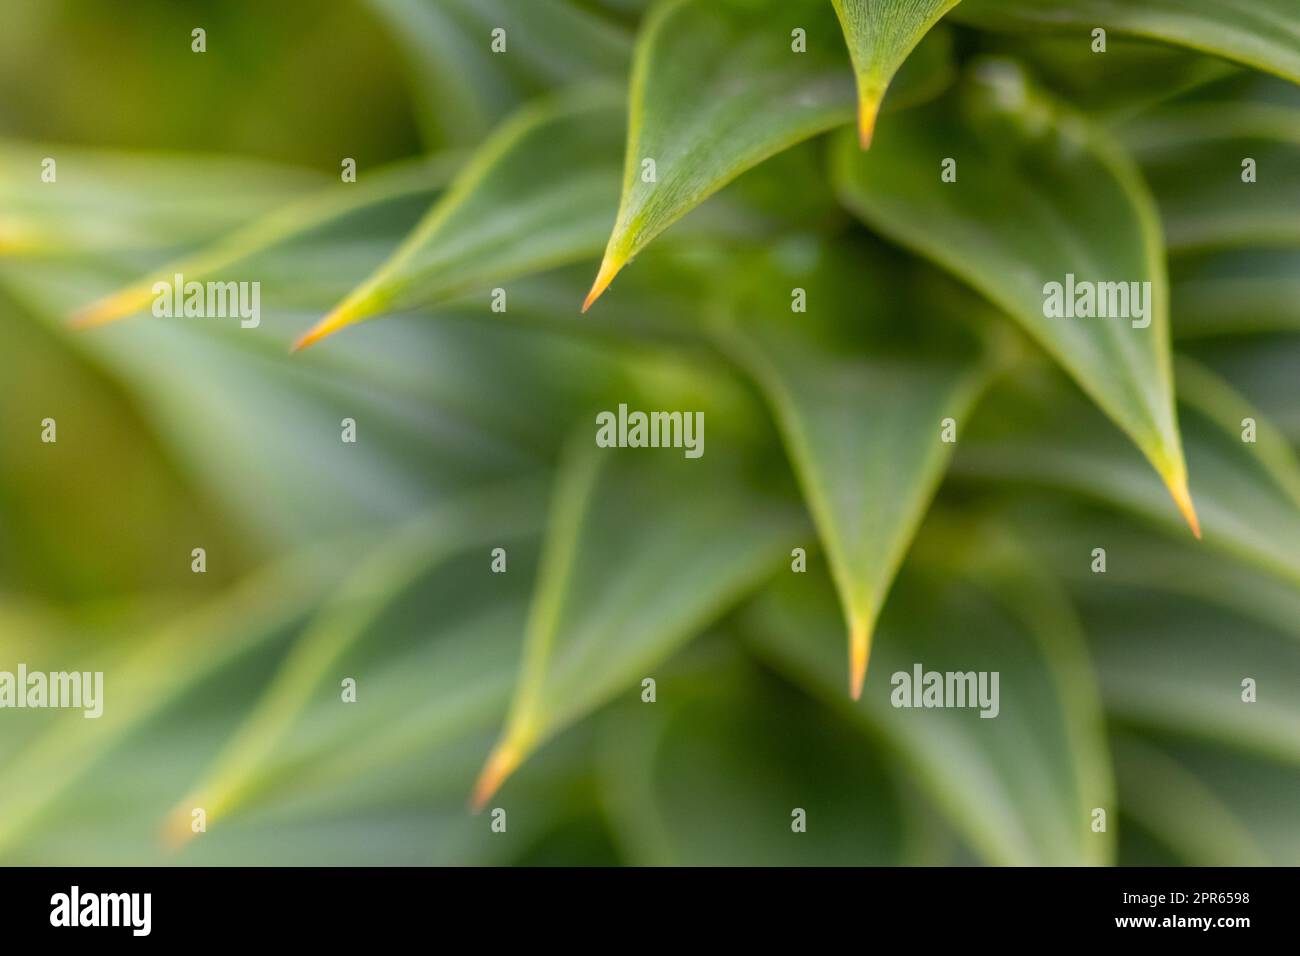 Grüne dornige Blätter von Aracaria araucana oder Affenschwanz mit scharfen nadelartigen Blättern und Spikes exotischer Pflanzen in der Wildnis patagoniens zeigen symmetrische Formdetails der grünen Blätter Stockfoto